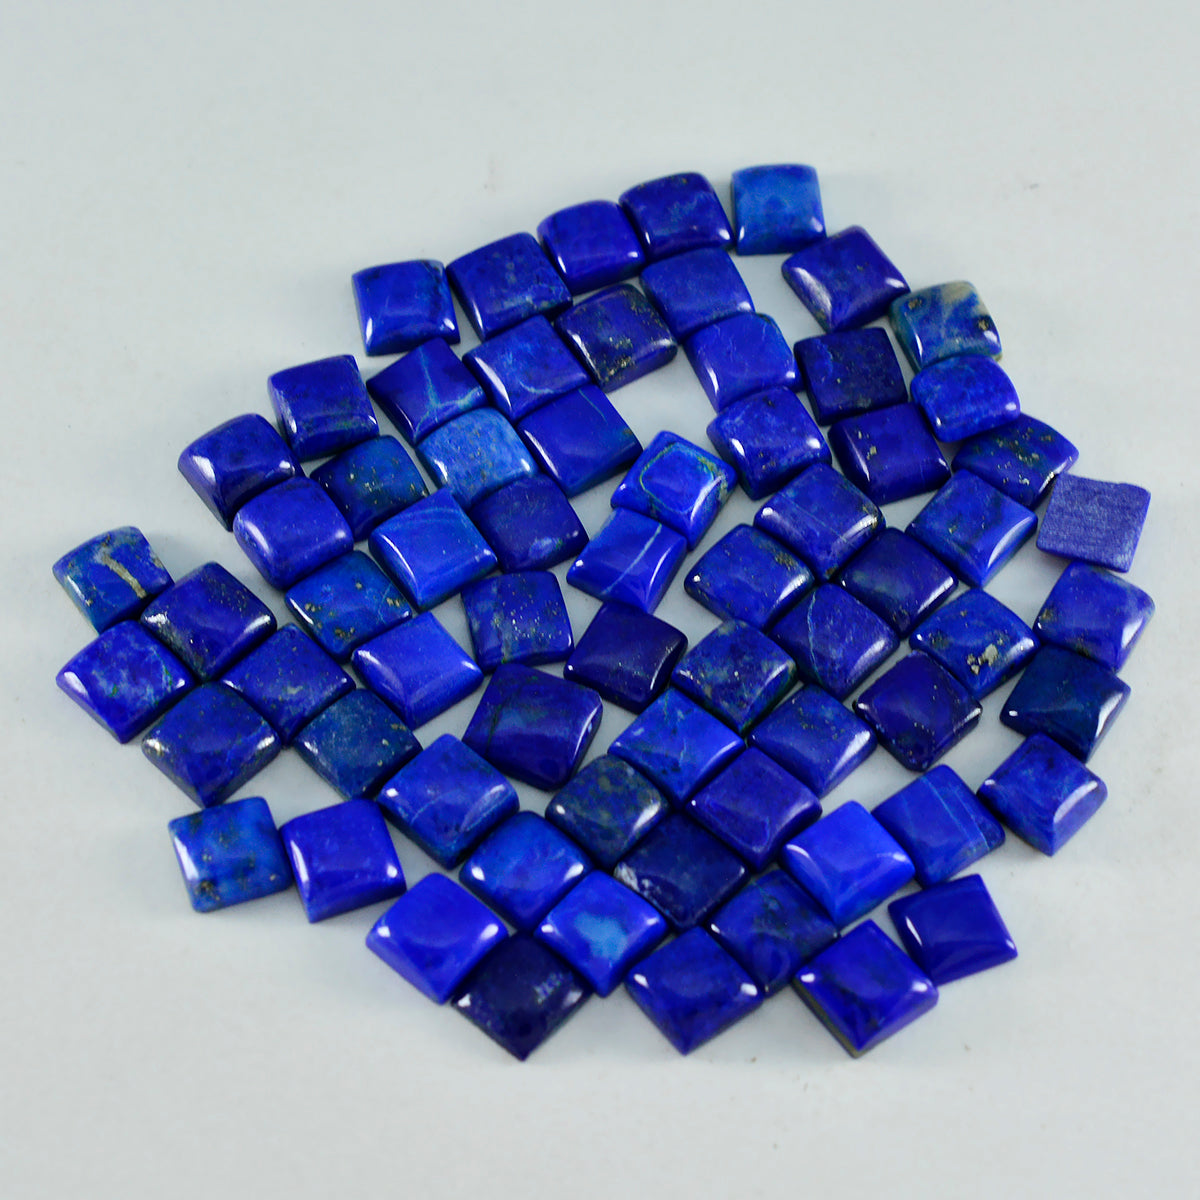 riyogems 1 шт. синий лазурит кабошон 7x7 мм квадратной формы, красивый качественный камень